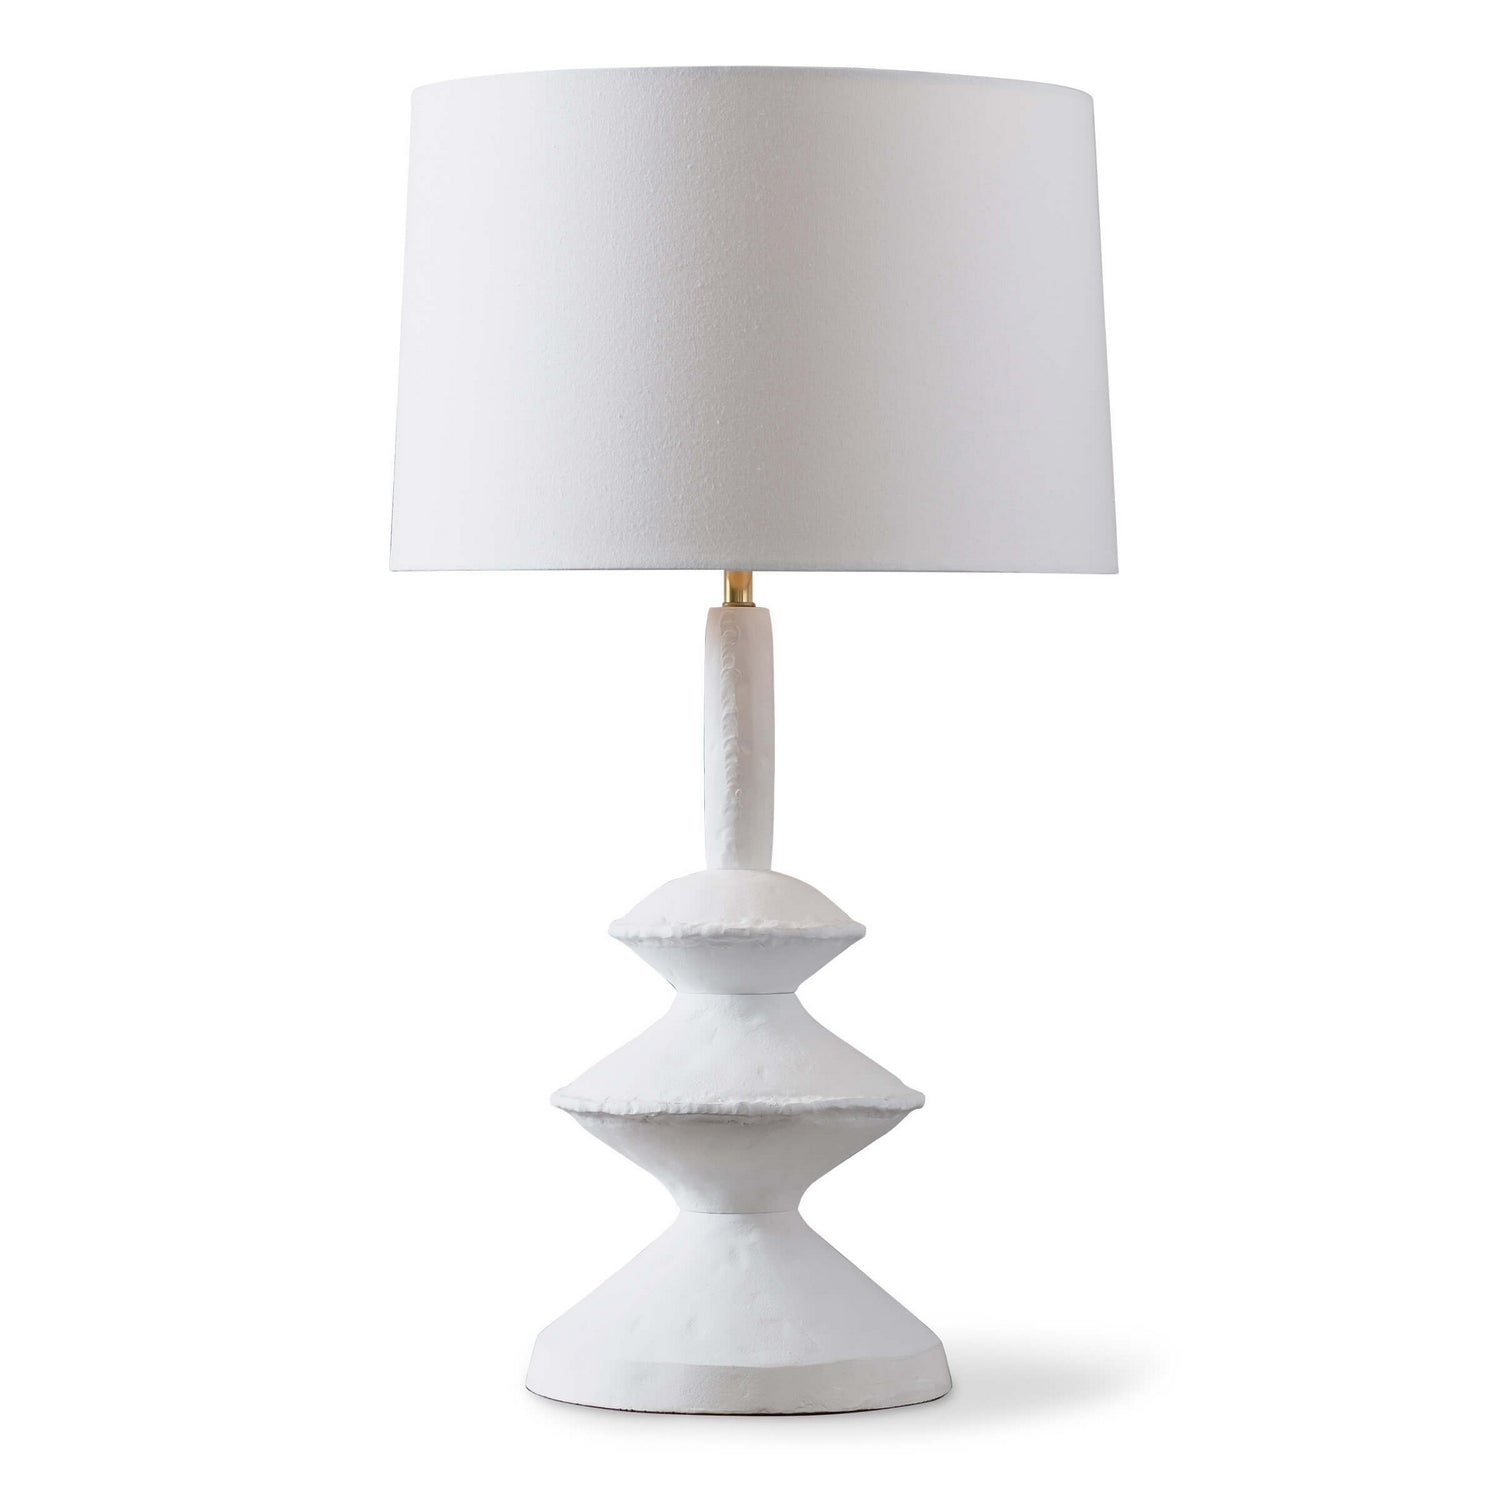 Regina Andrew - 13-1350 - One Light Table Lamp - Hope - White